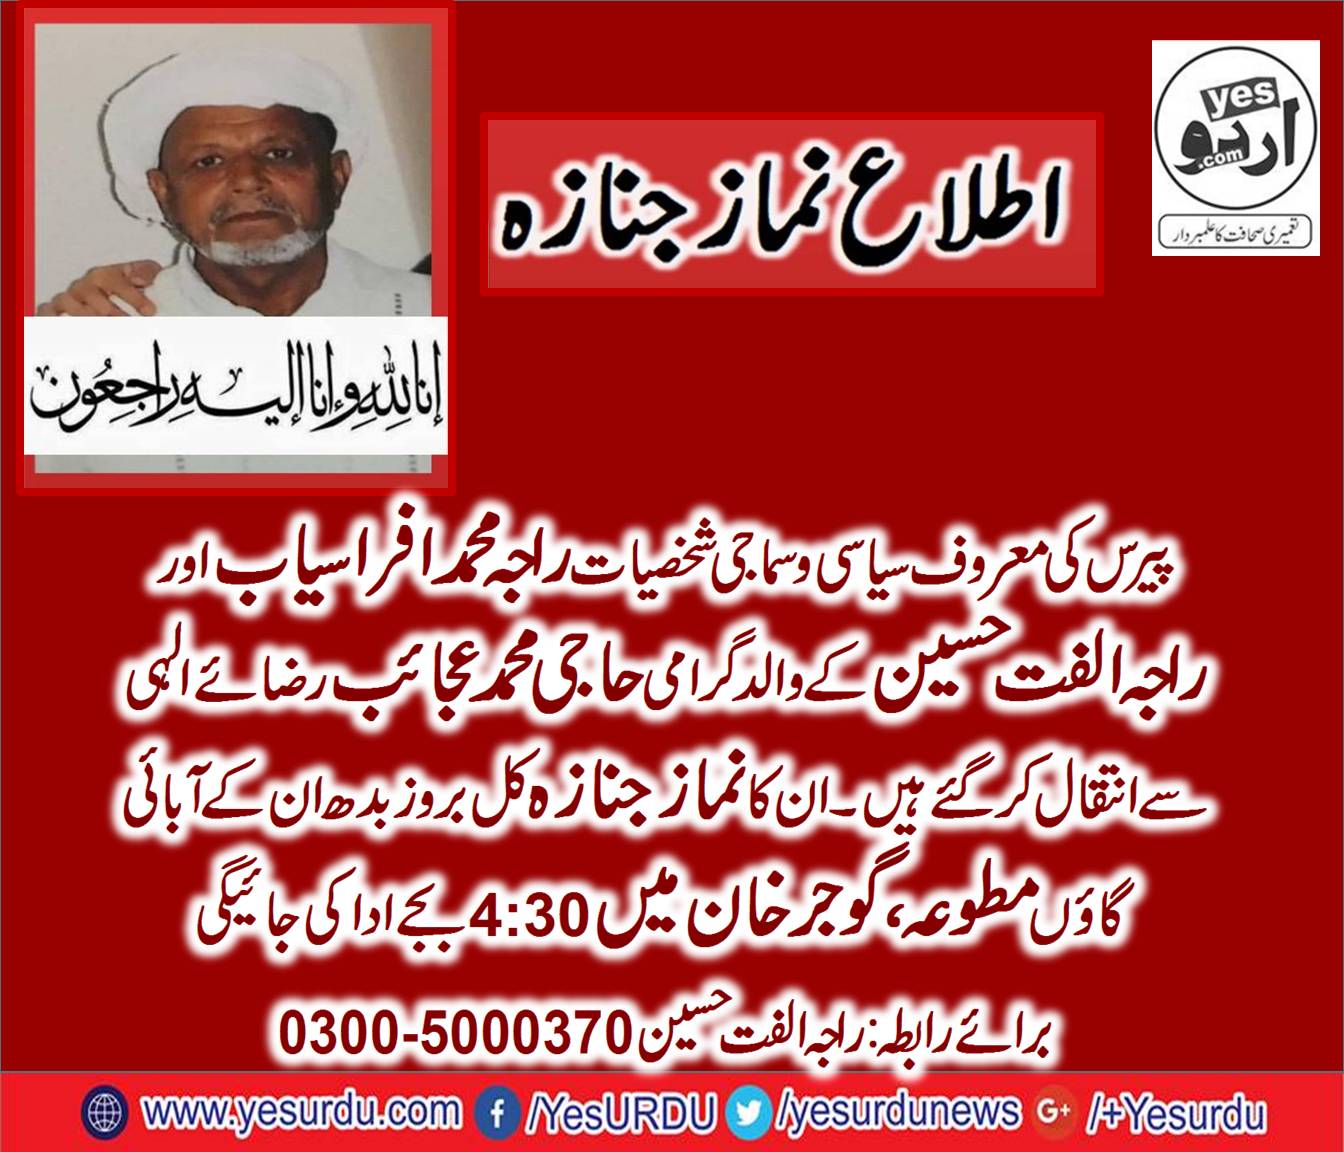 Father of, Raja Afrasyab, Haji Ajaib Khan, Died, Today